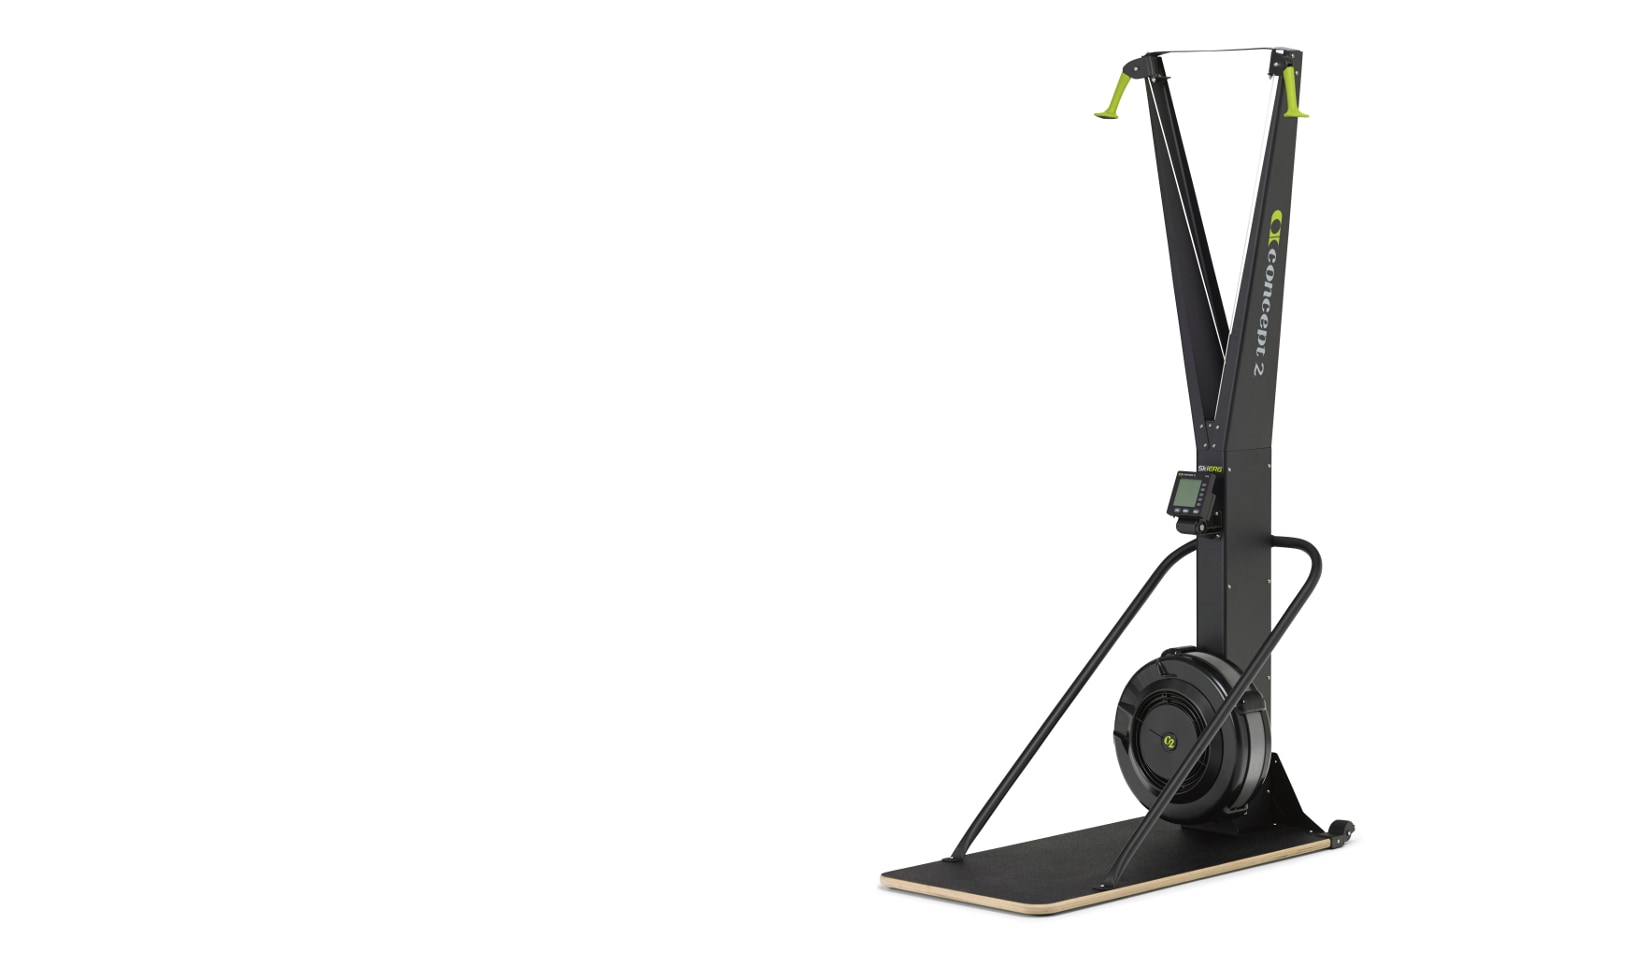 SkiErg Indoor Nordic Ski Machine | Concept2 Exercise Machines1638 x 960